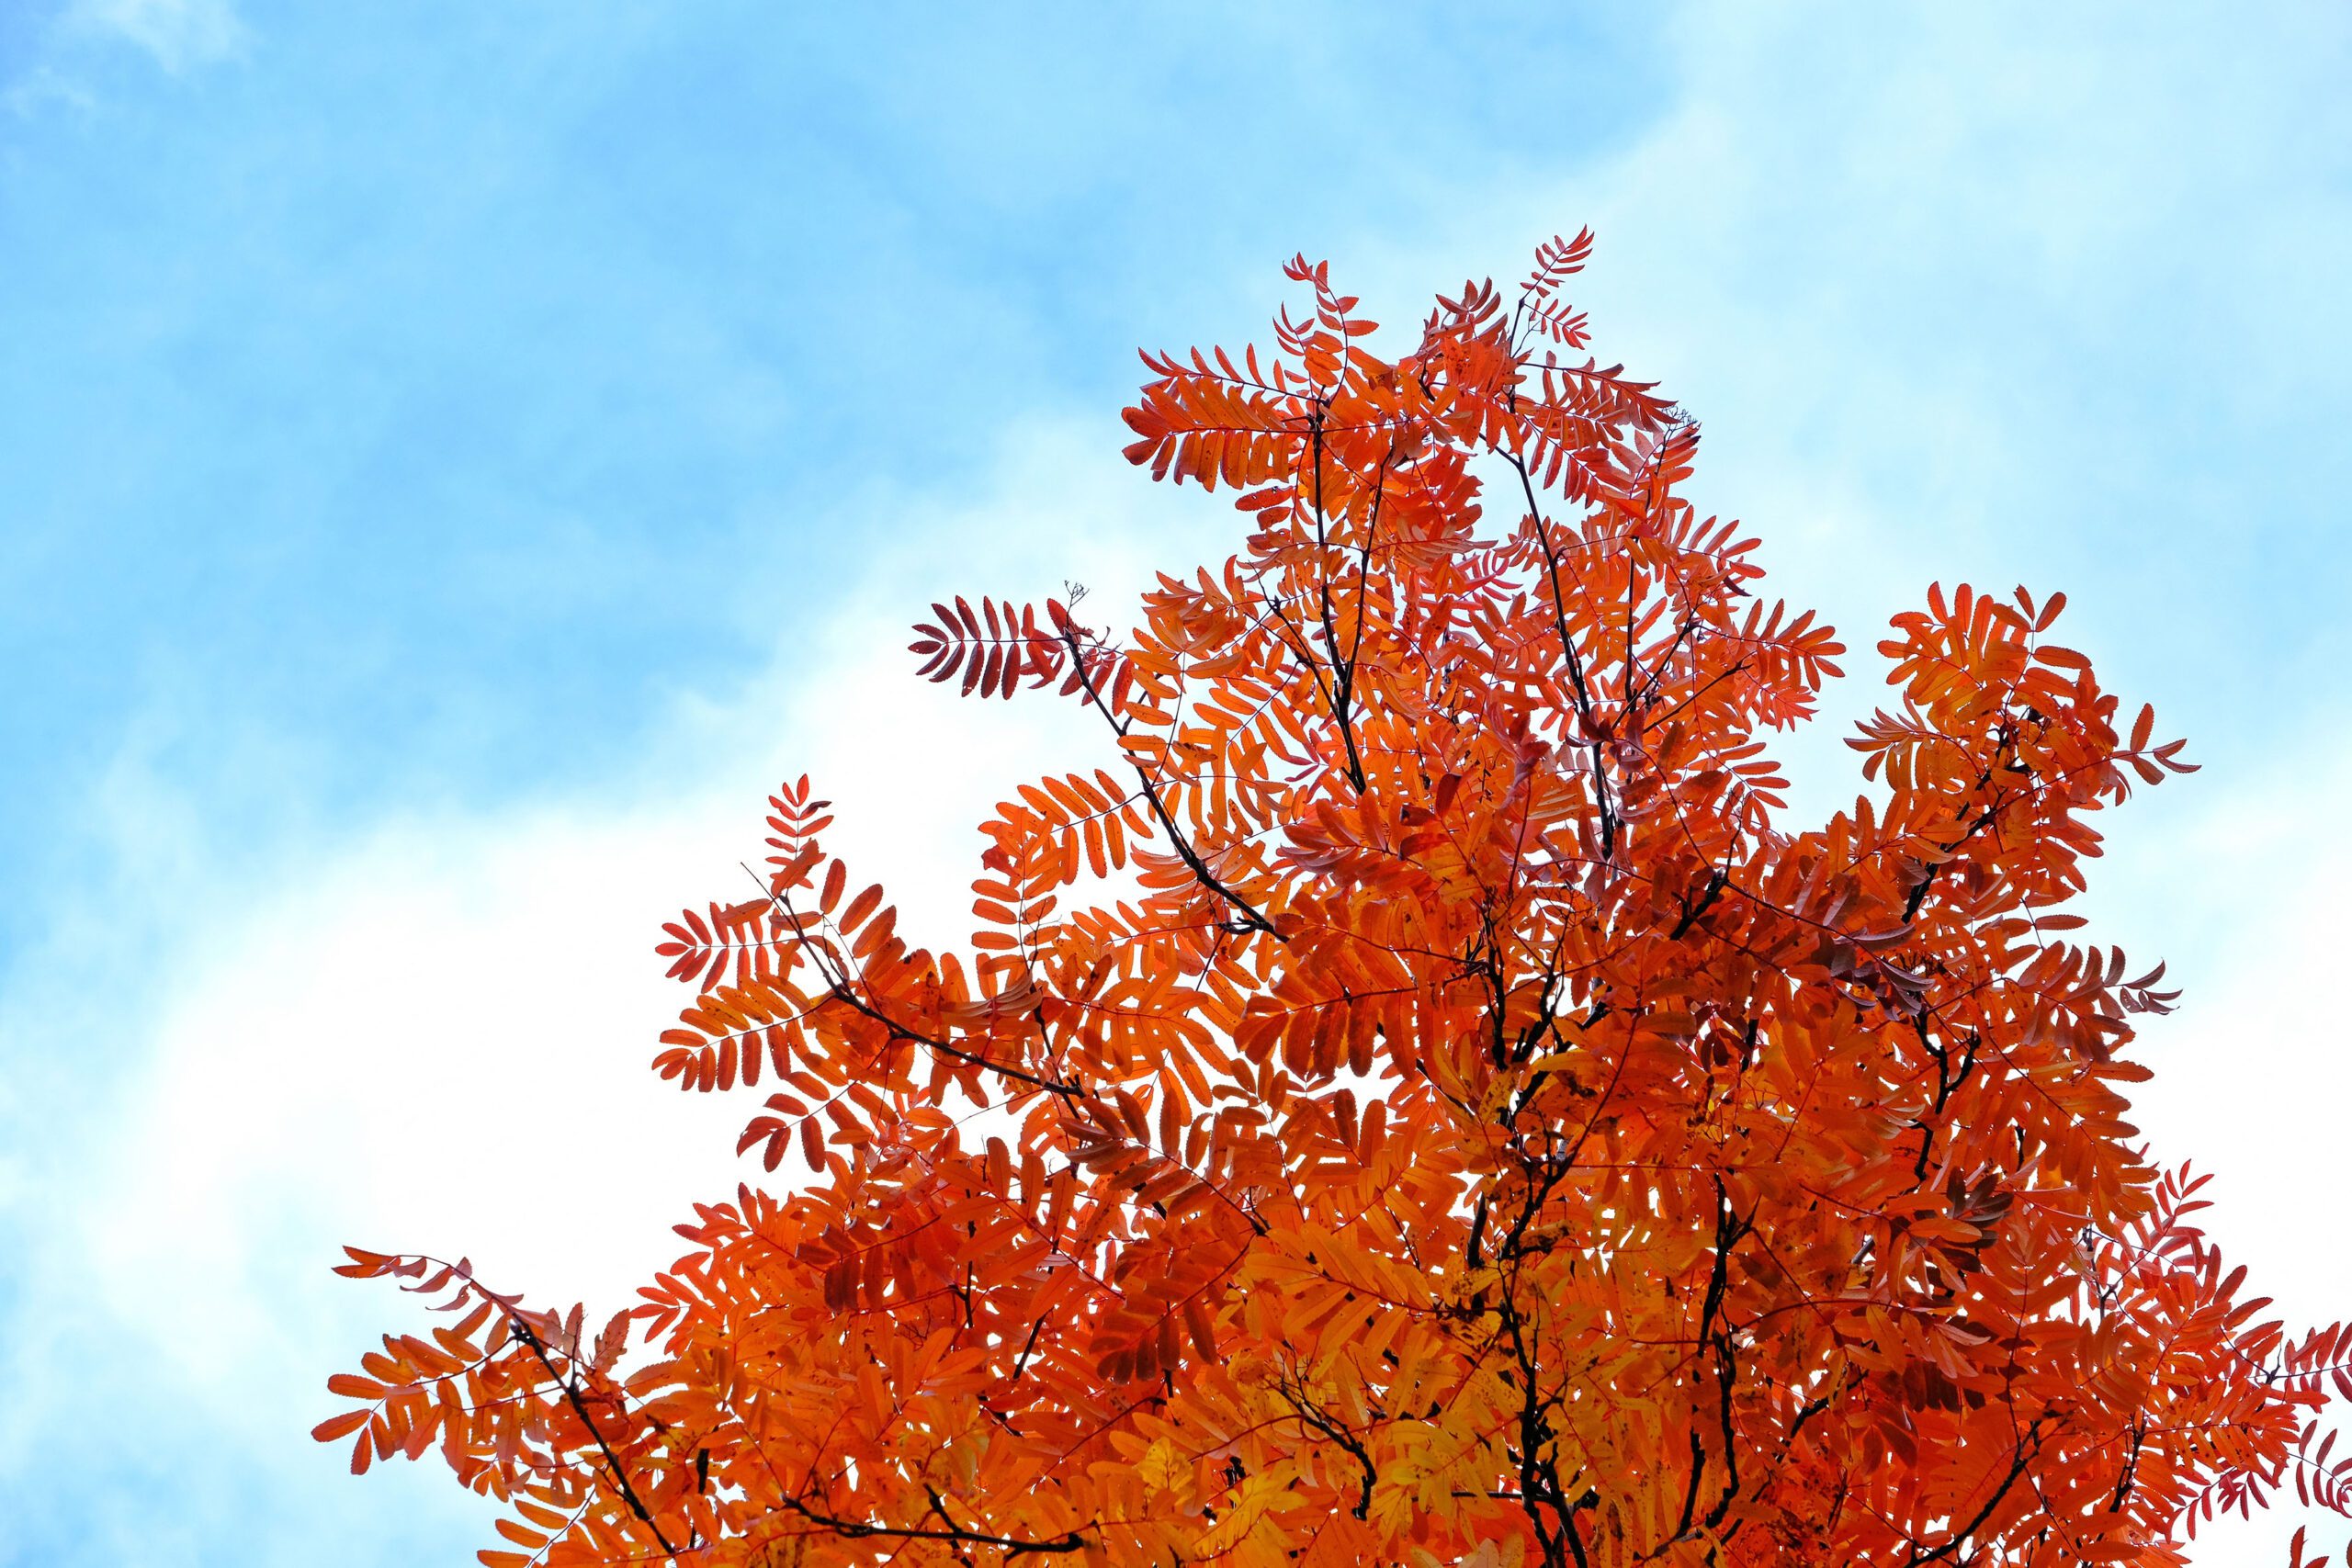 Sorbus Autumn Spire leaves in autumn